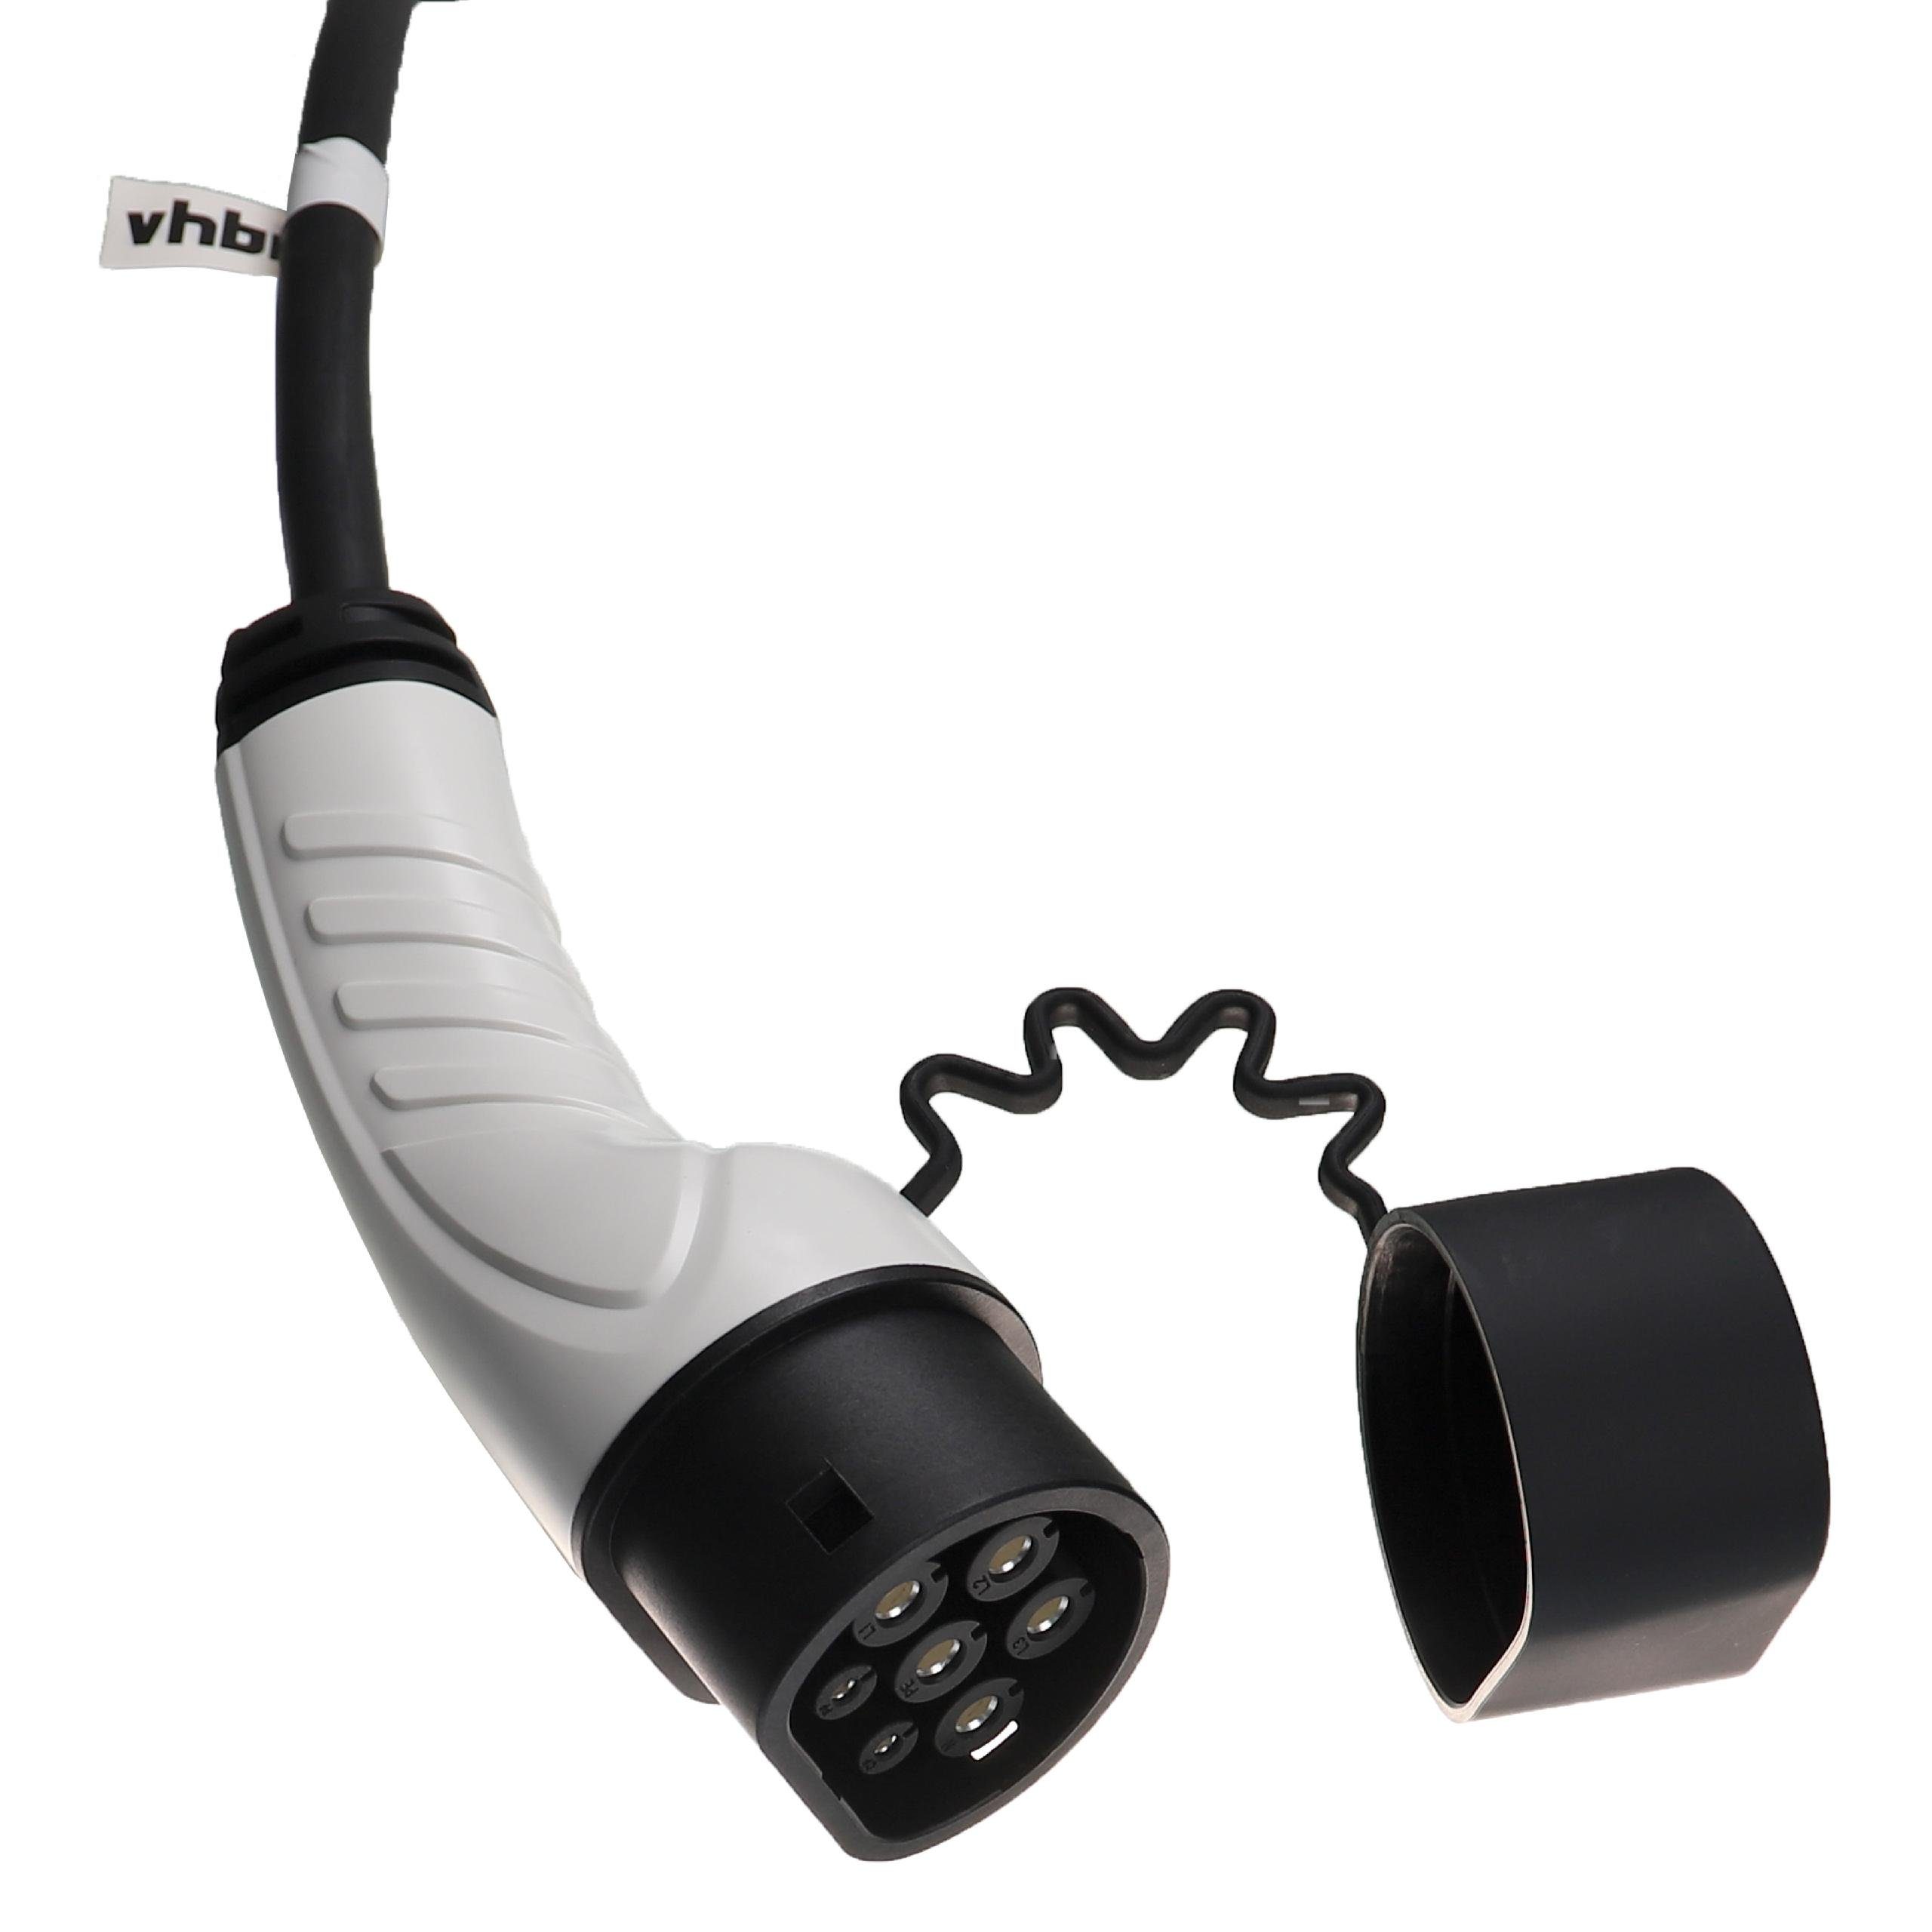 für Citroen e-Spacetourer Plug-in-Hybrid Elektroauto / vhbw passend Elektro-Kabel